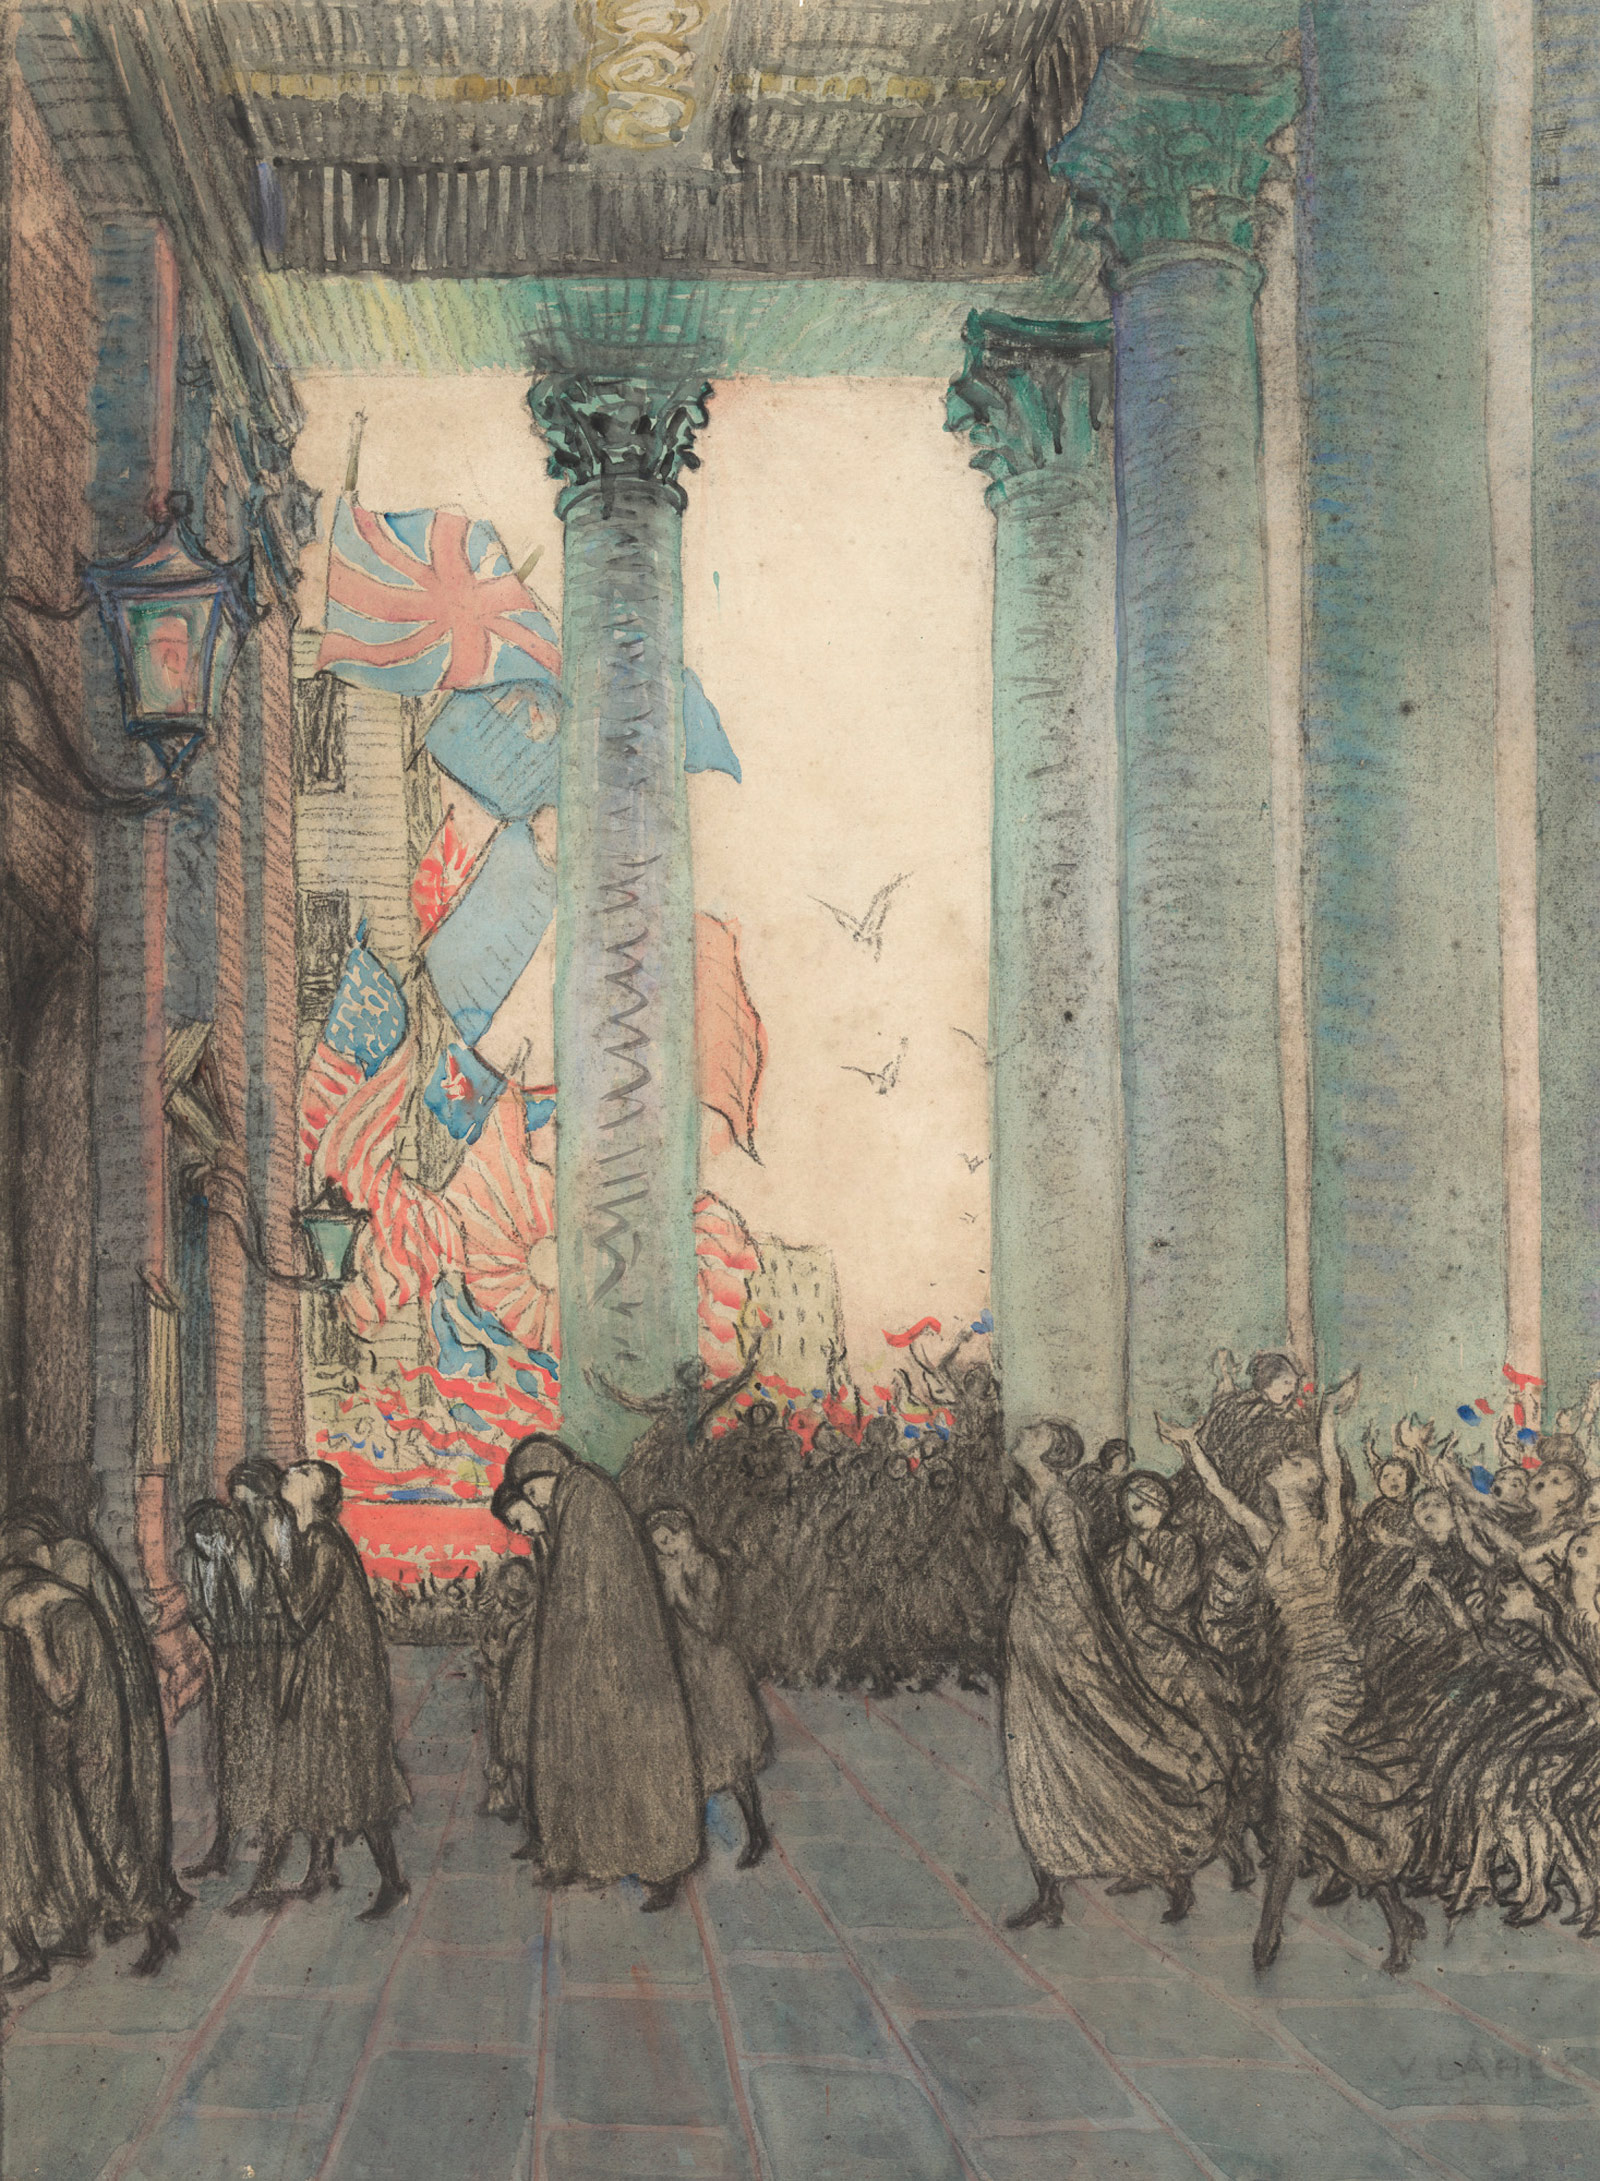 <p><em>Rejoicing and remembrance, Armistice Day, London, 1918</em>, 1924, Vida Lahey, 74.5 x 56 cm</p>
